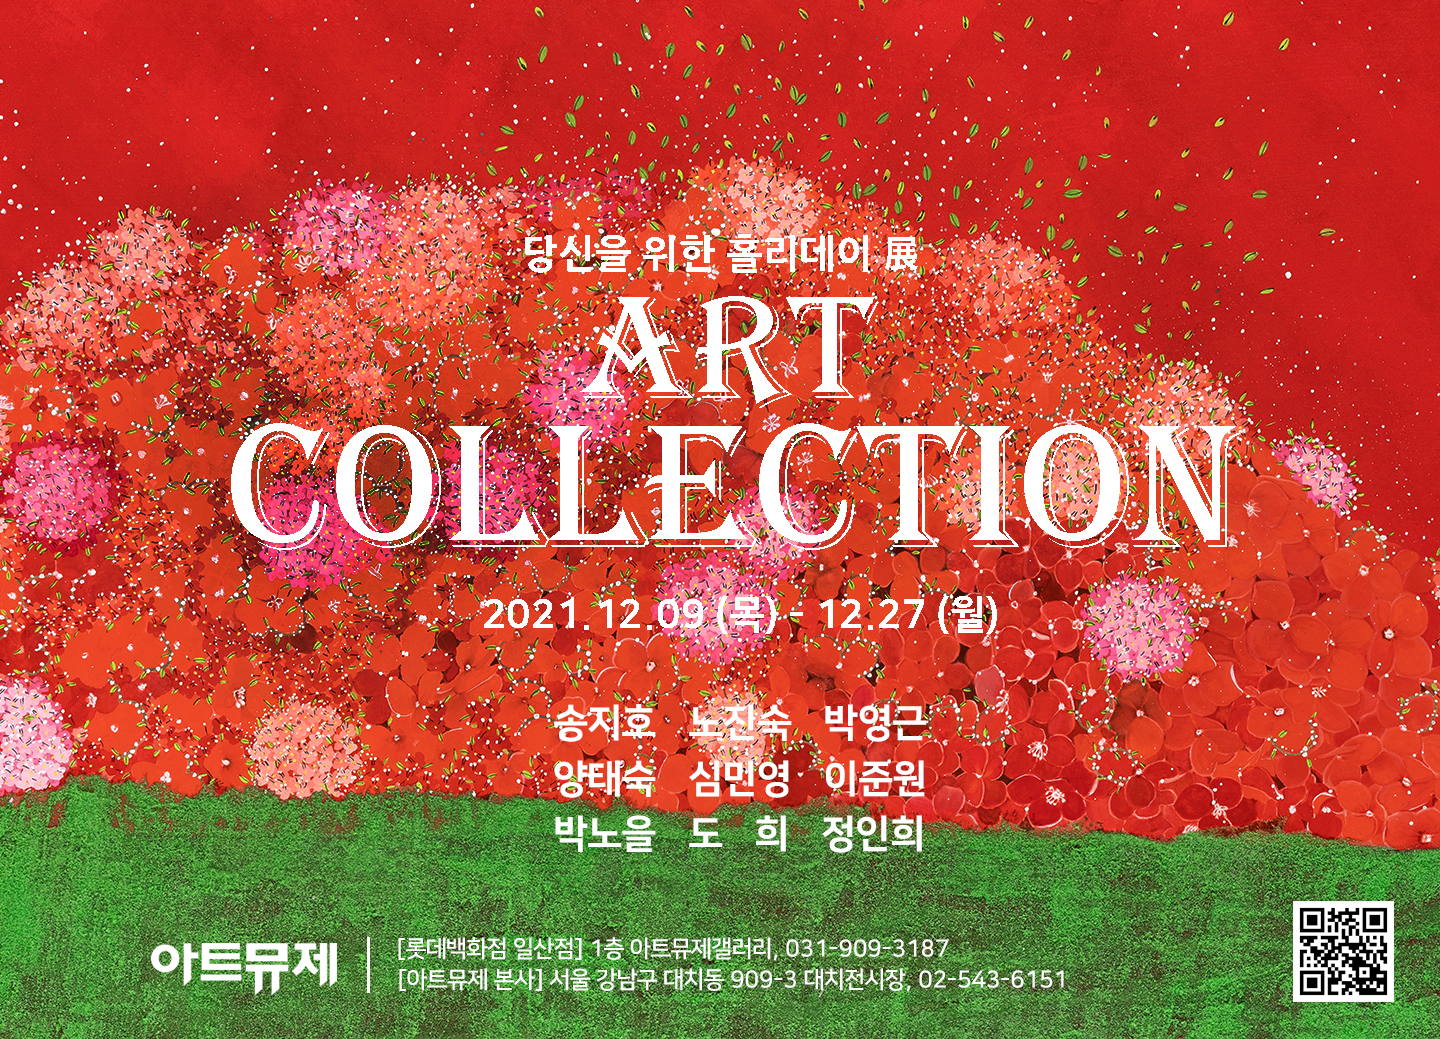 [아트뮤제 전시] ART COLLECTION - 당신을 위한 홀리데이展